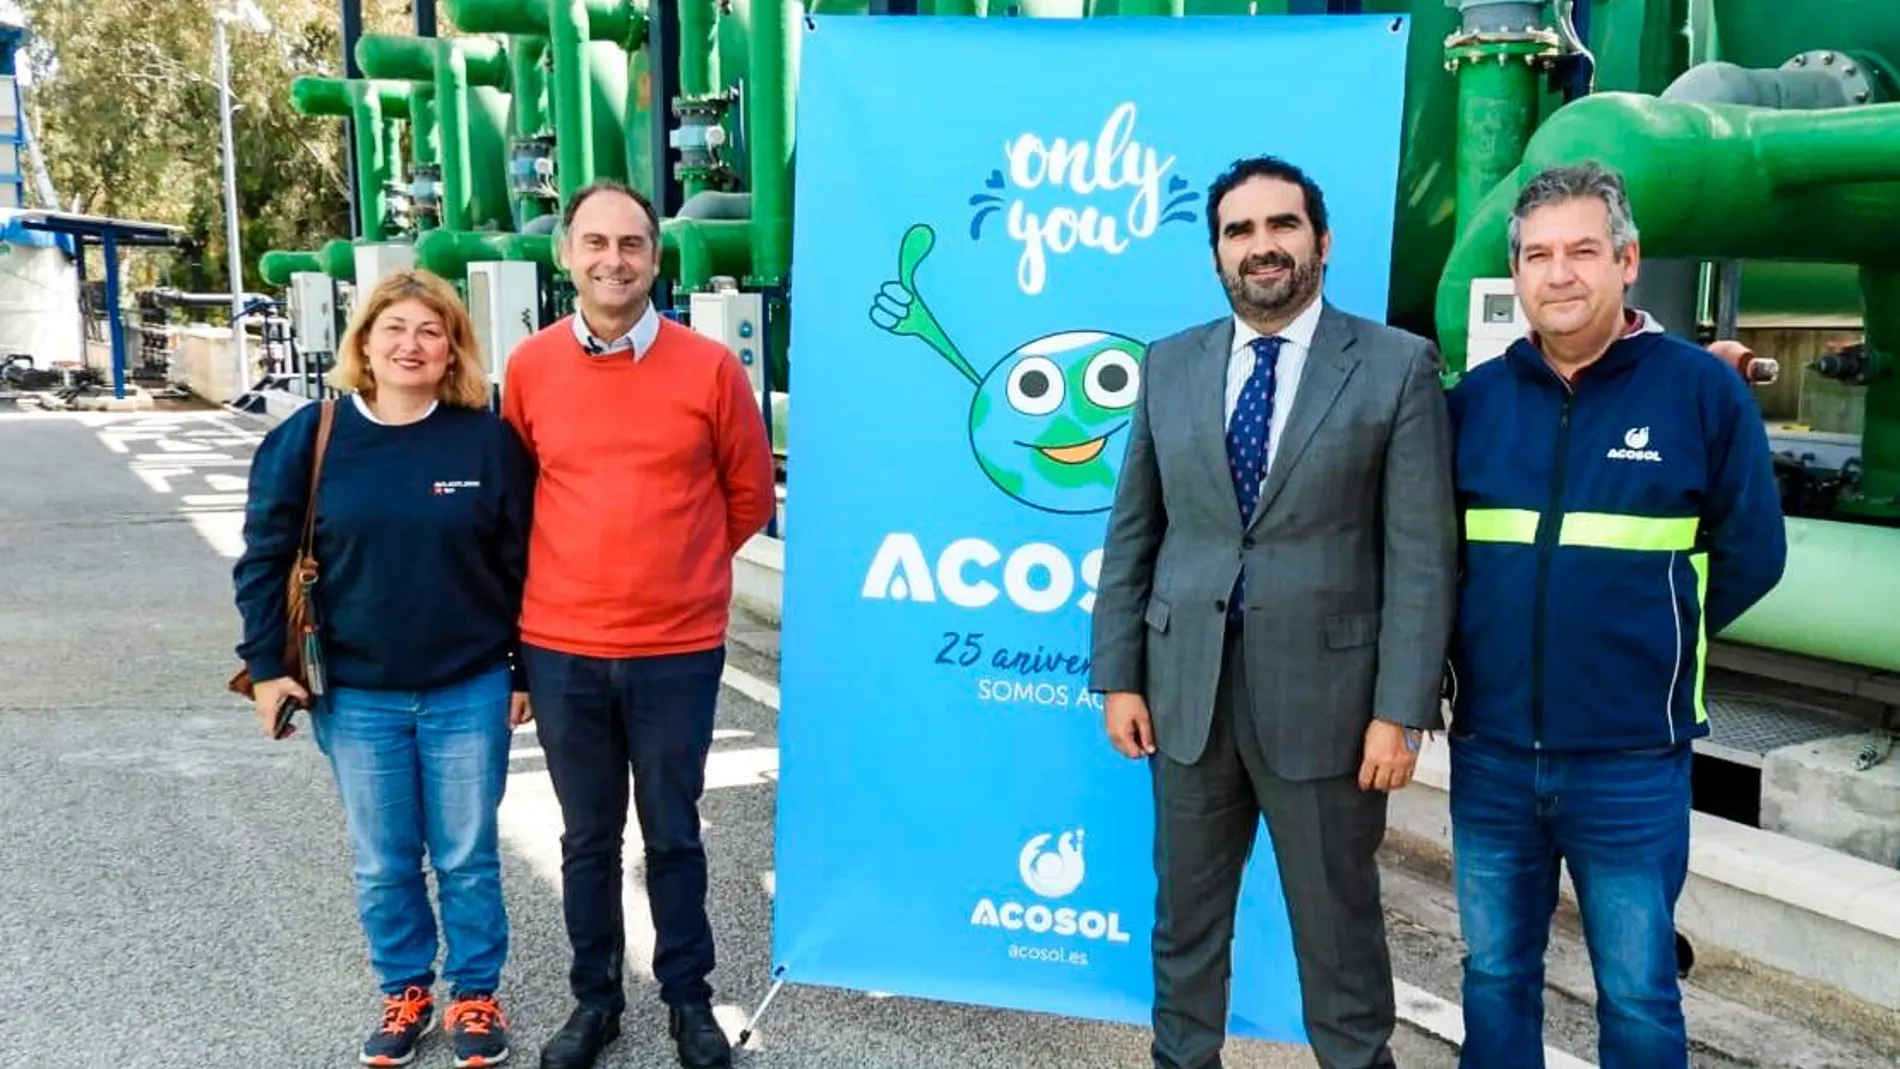 El Día del Agua coincide con el 25 aniversario de Acosol / Foto: La Razón